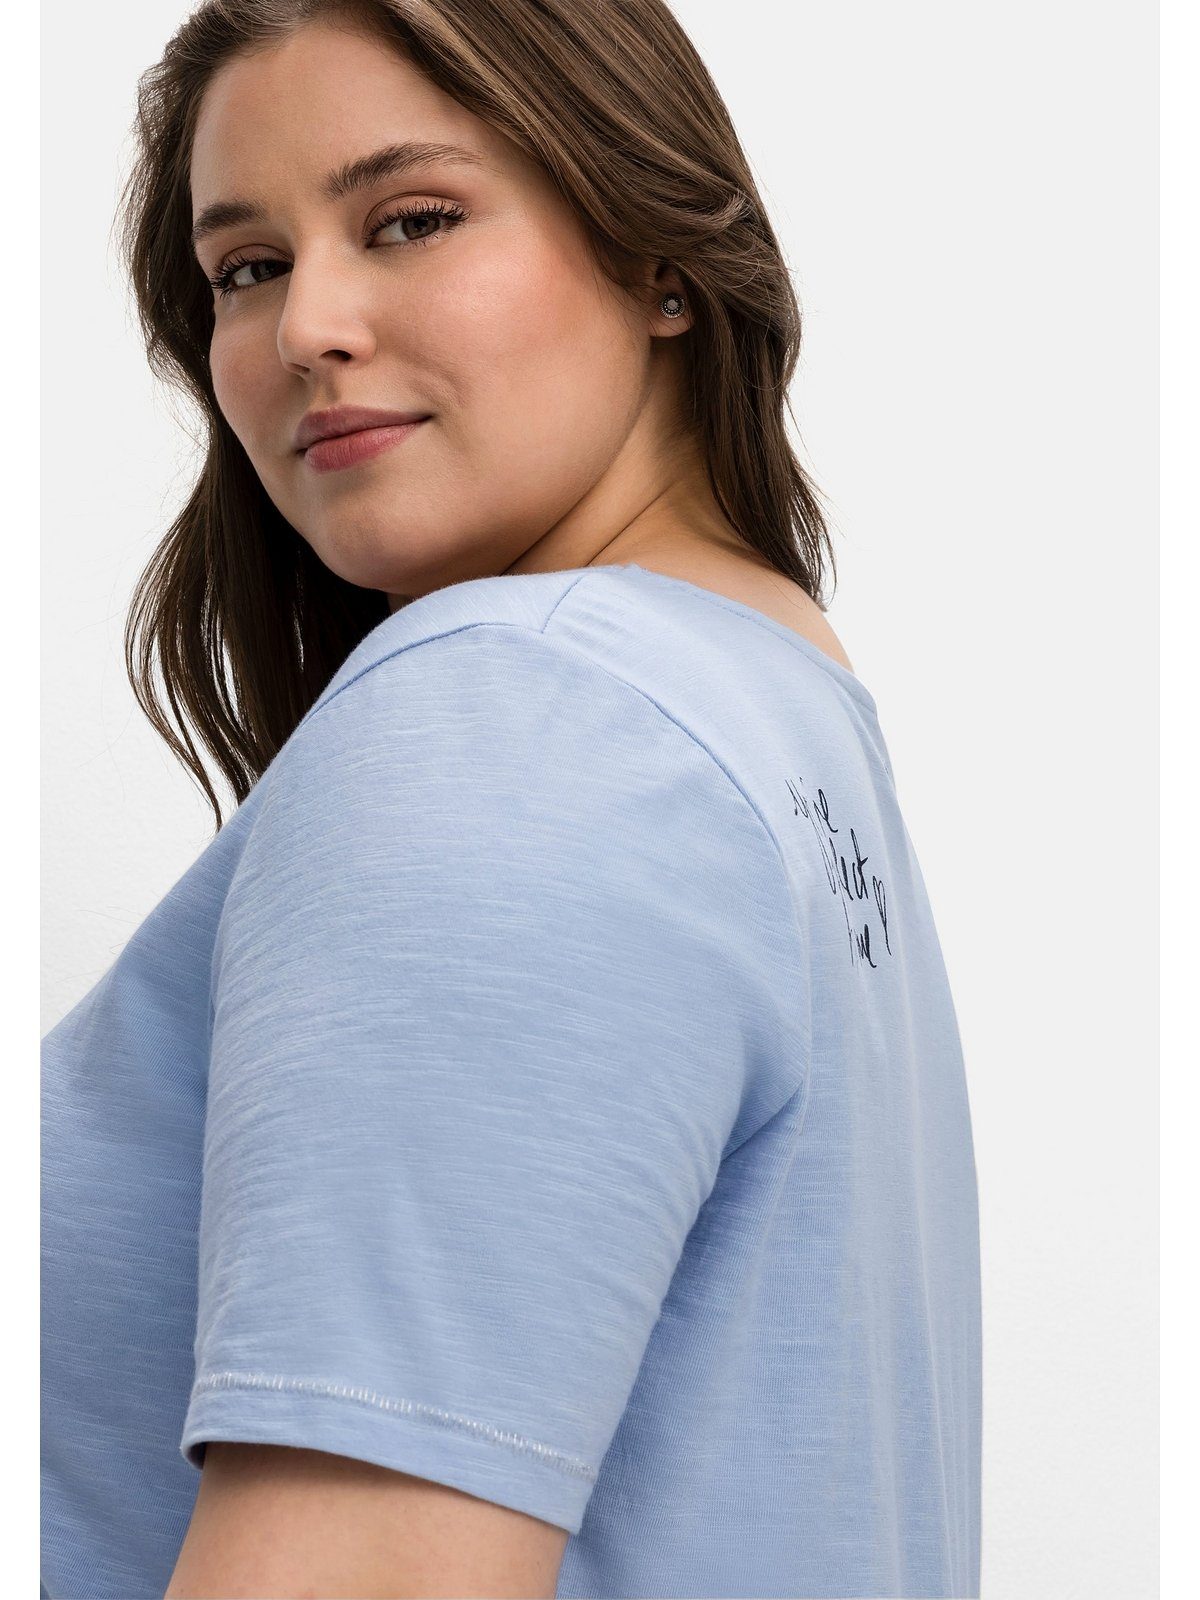 Sheego T-Shirt Große Größen mit Print der mittelblau hinten Schulter auf